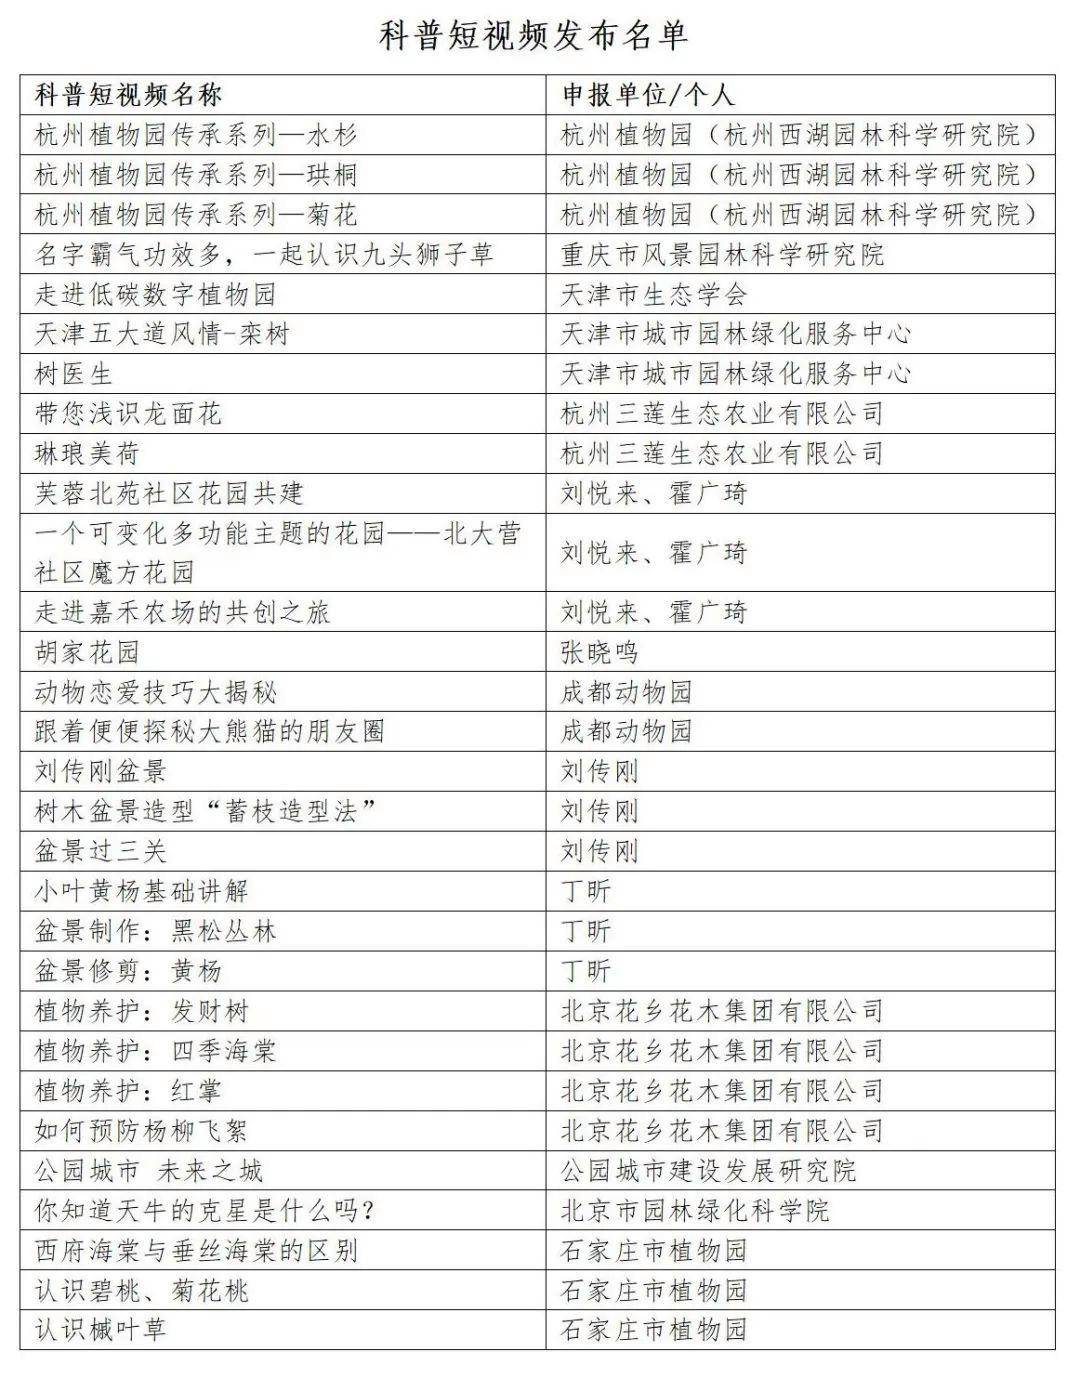 安博体育app下载科普 30个风景园林科普安博体育官网短视频作品在中国发布展示(图2)